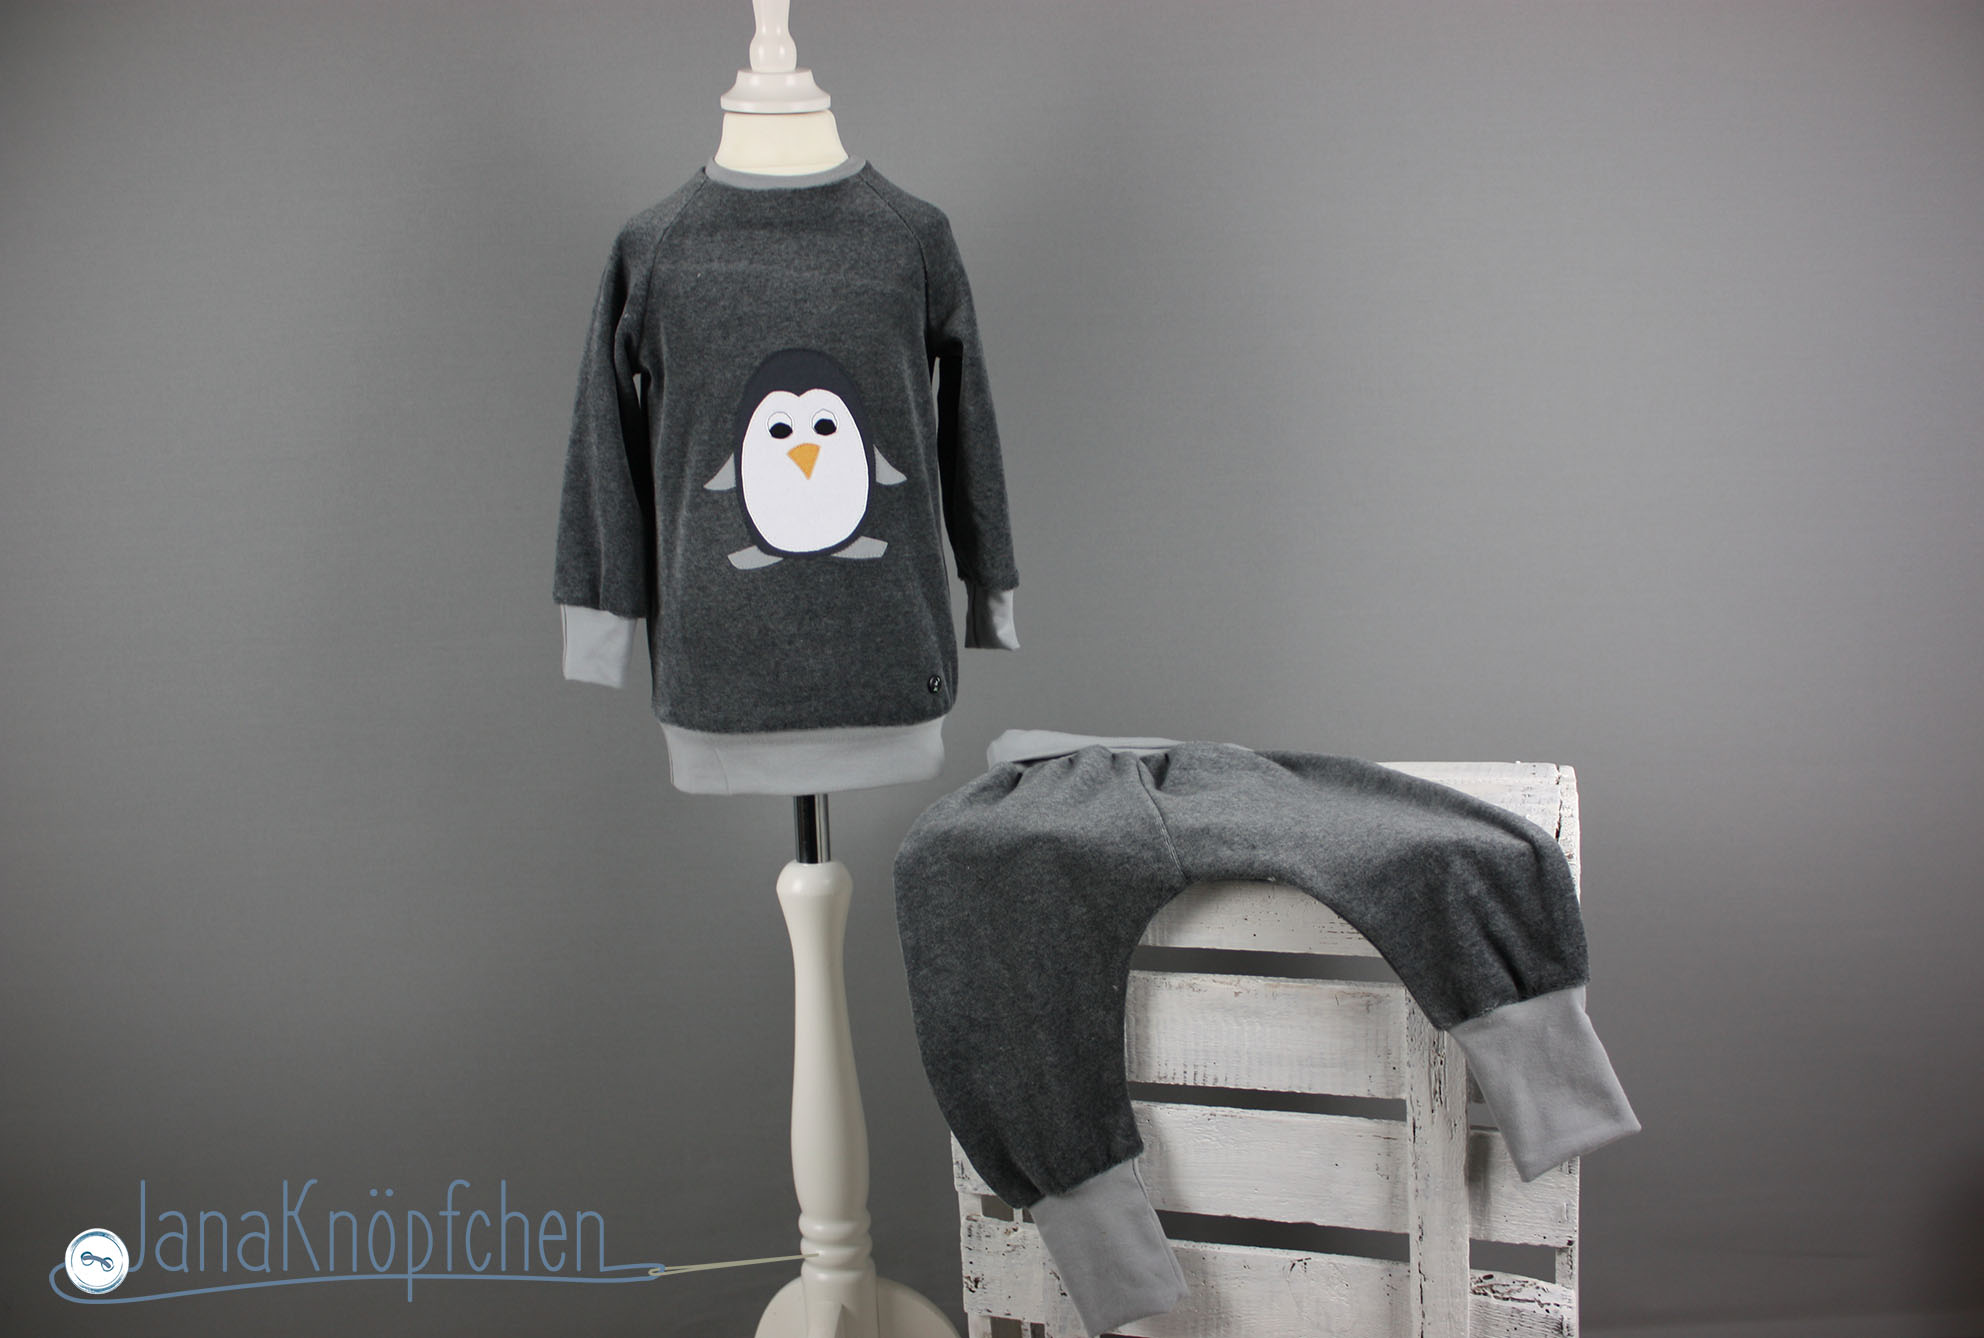 Schlafanzug mit Pinguinapplikation nähen. Jahresrückblick auf die Nähprojekt des Nähblogs JanaKnöpfchen - Nähen für Jungs